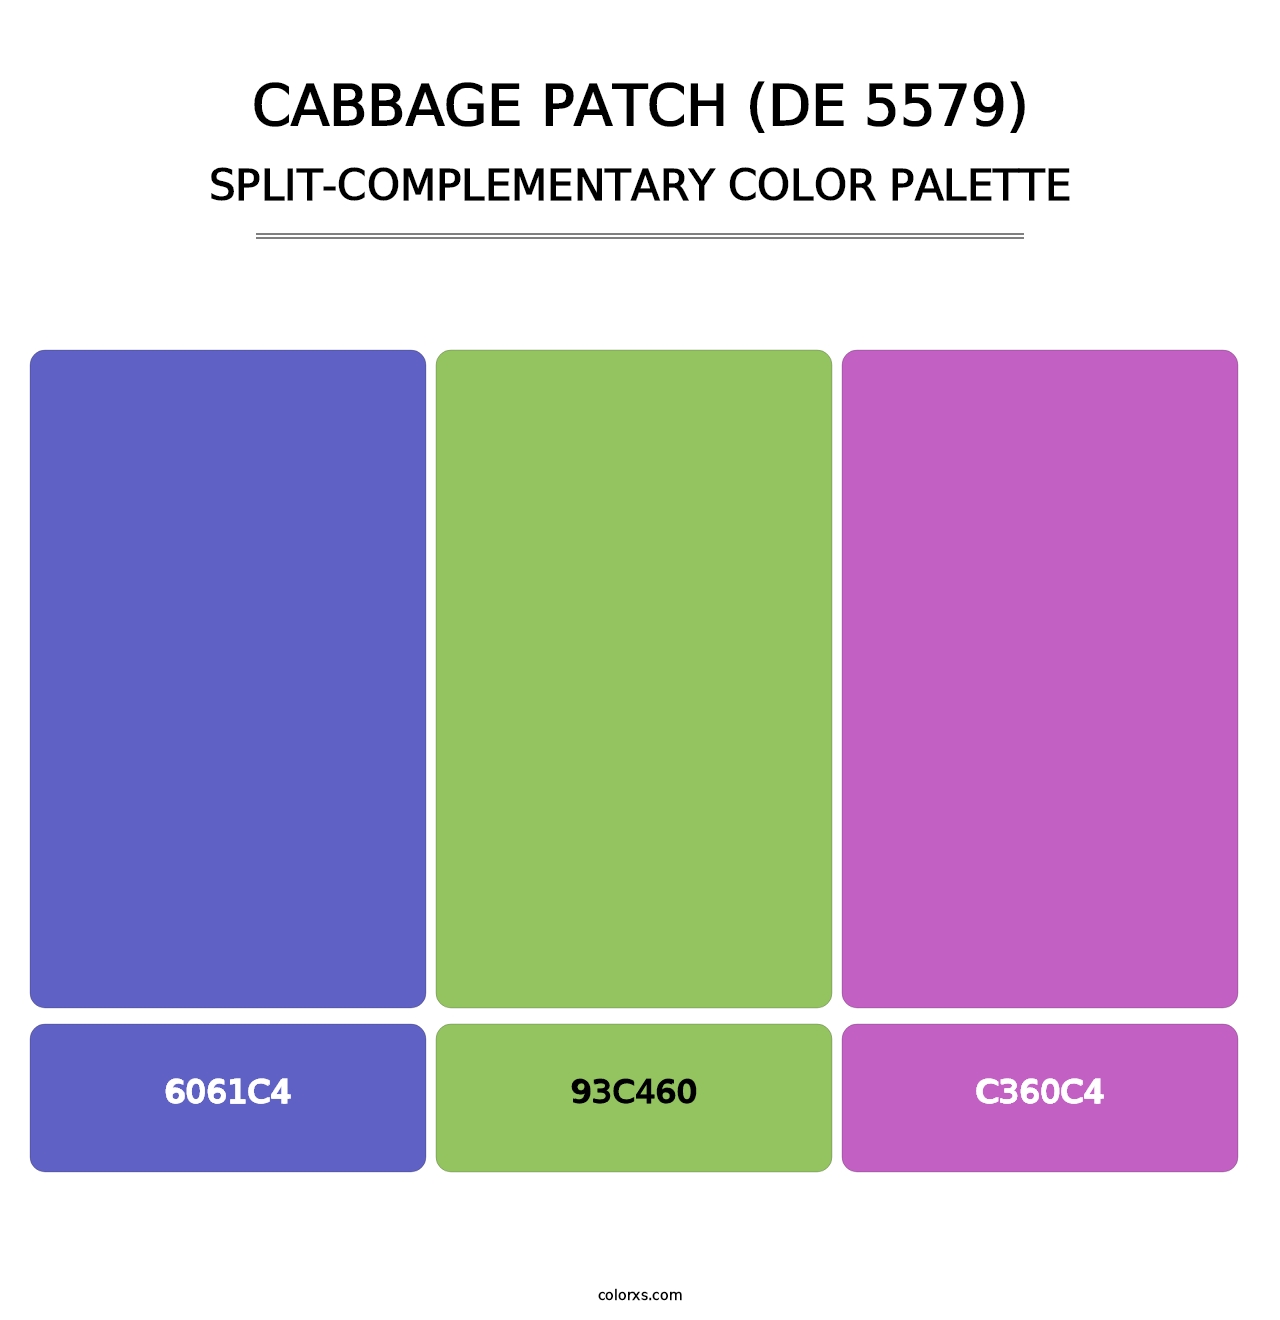 Cabbage Patch (DE 5579) - Split-Complementary Color Palette